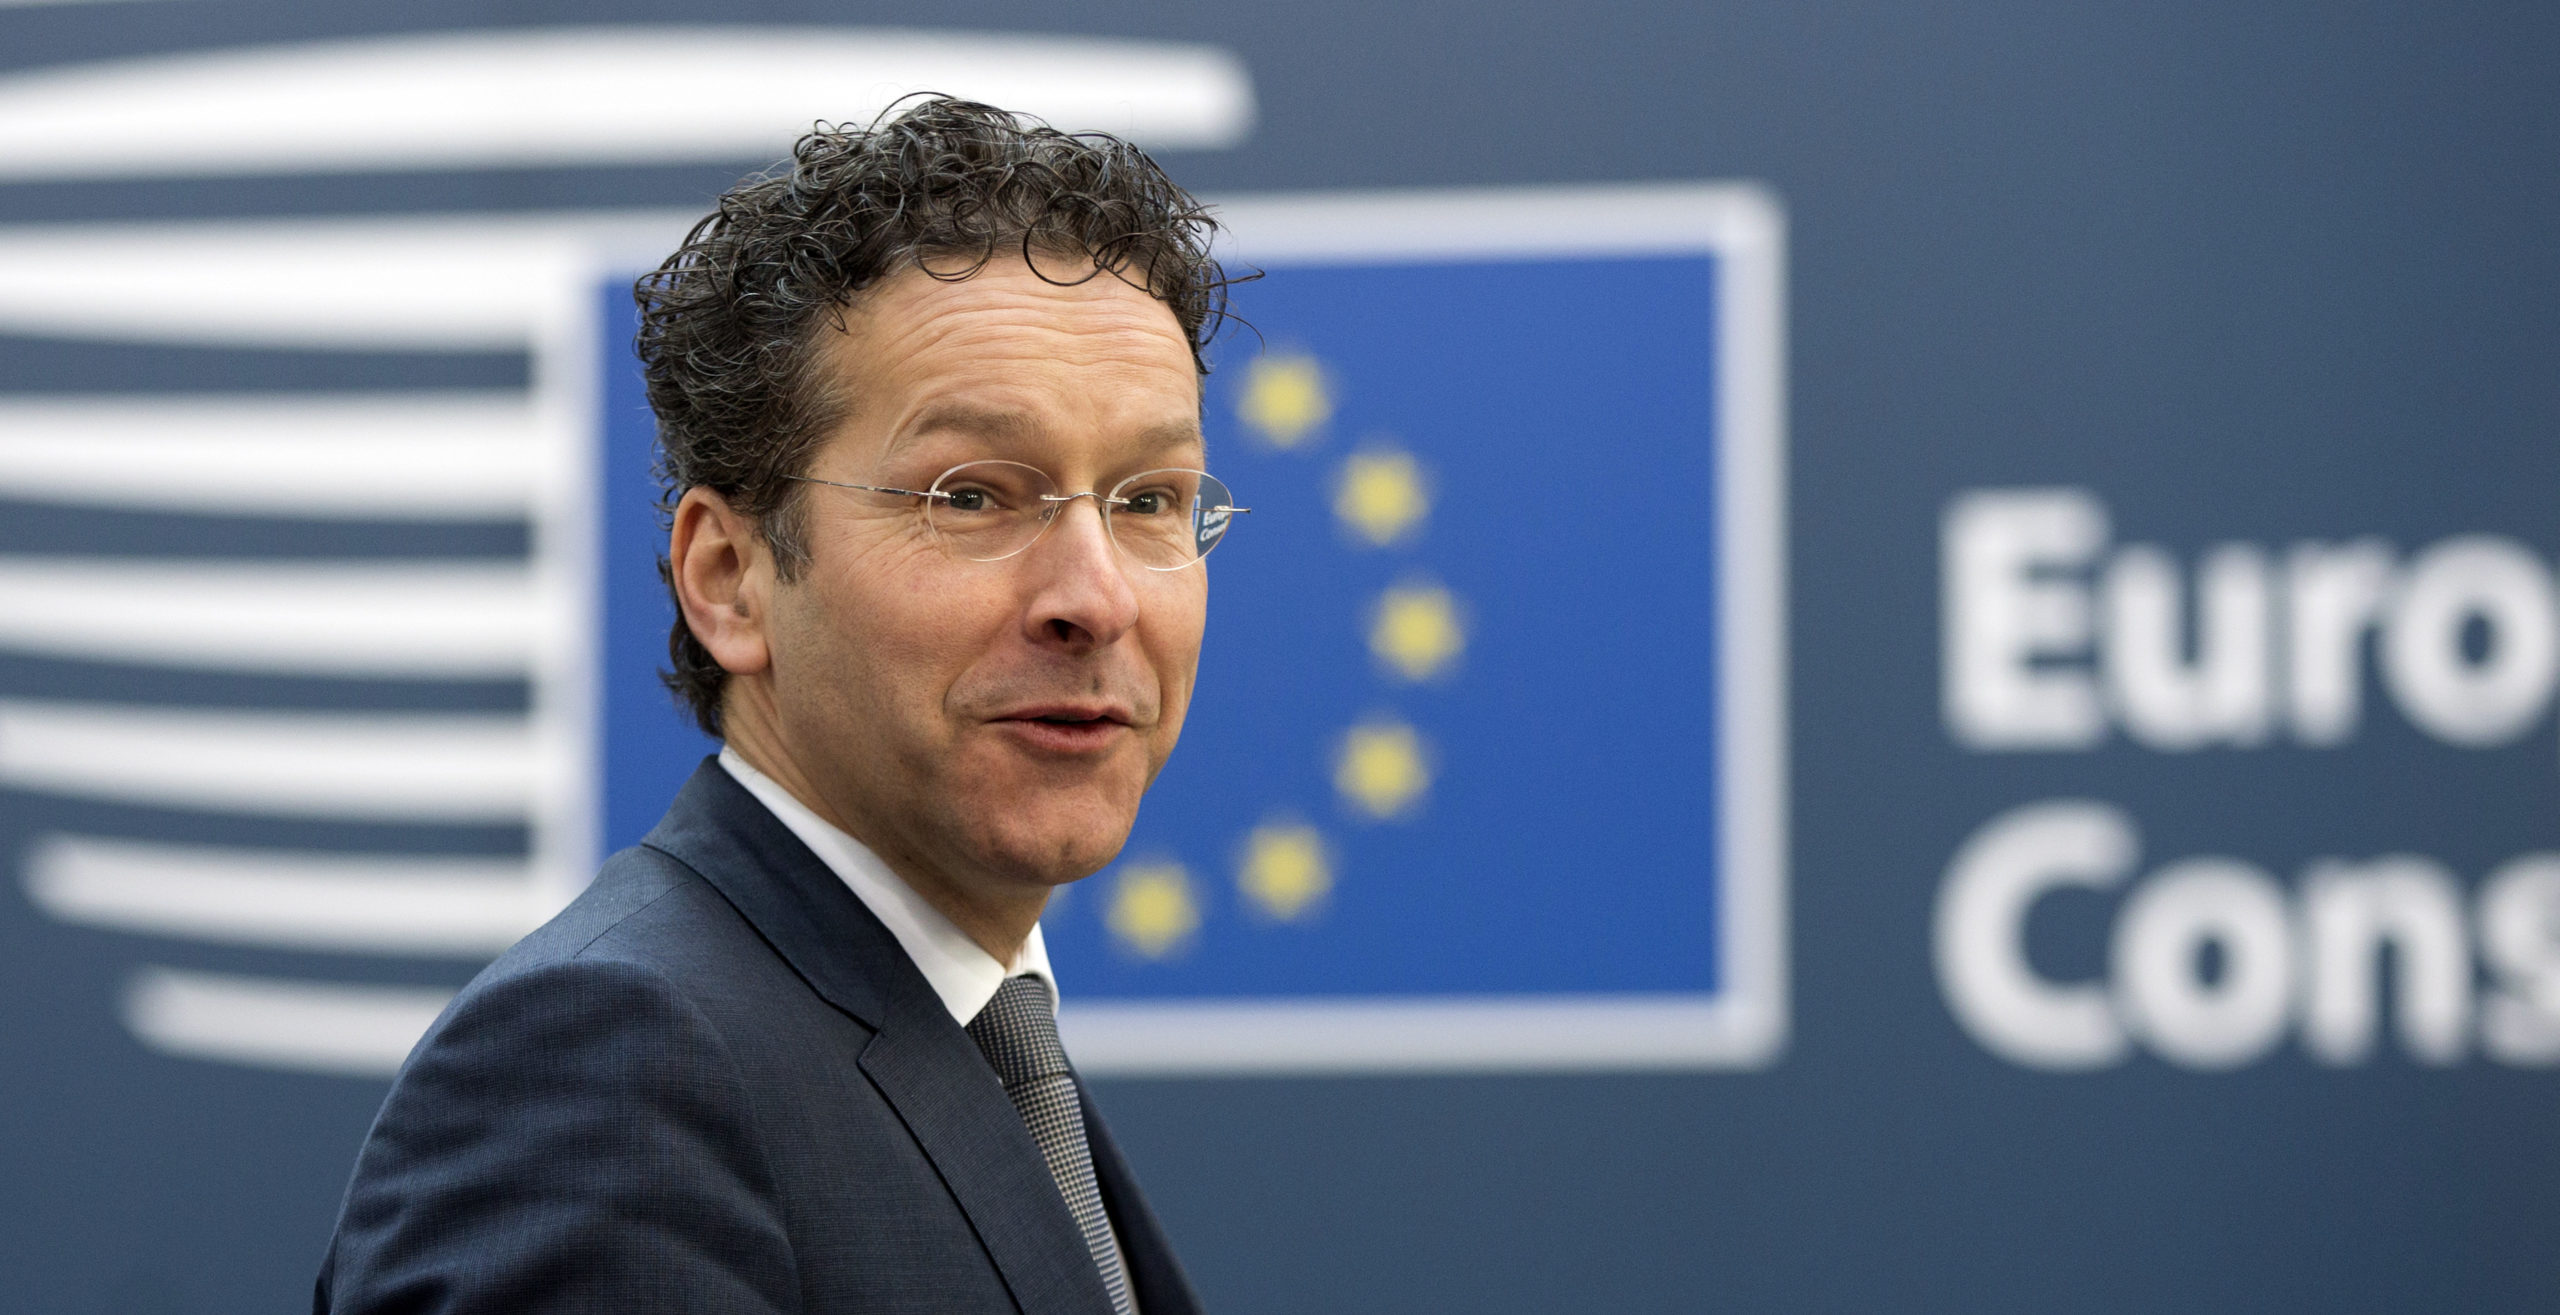 Ο Ντάισελμπλουμ επιθυμεί να σταματήσουν οι συζητήσεις για Grexit